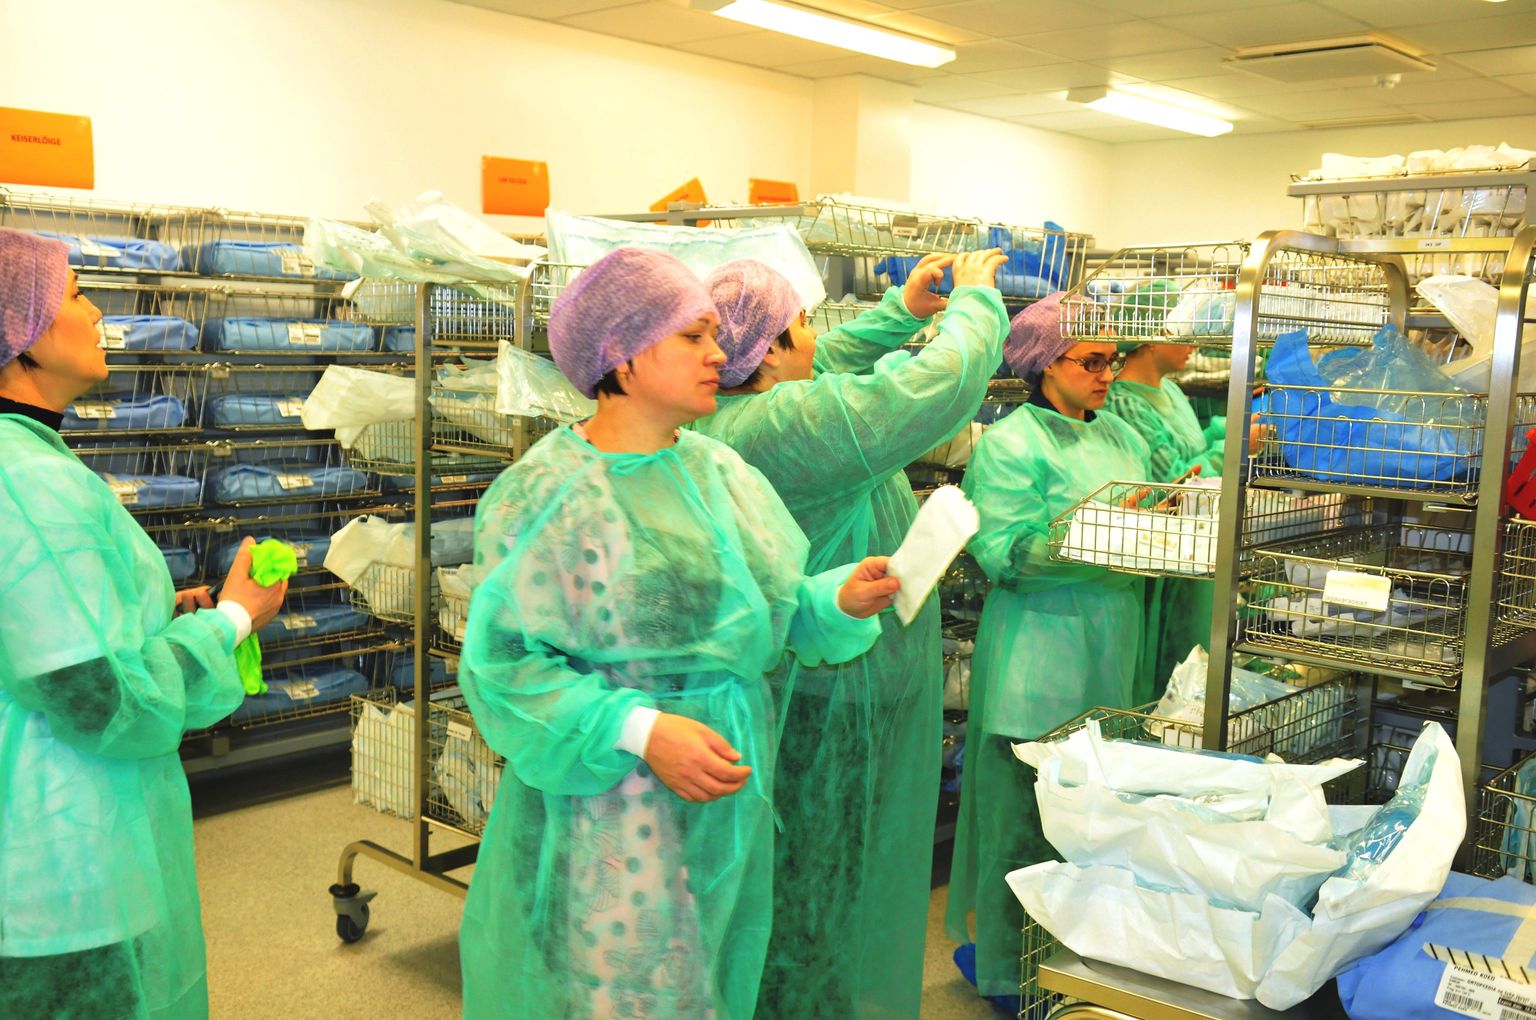 Moldovlased tutvuvad kliinikumis põhjalikult ka sellega, kuidas on steriilsete ja pakendatud instrumentide komplektide hoiustamine korraldatud.